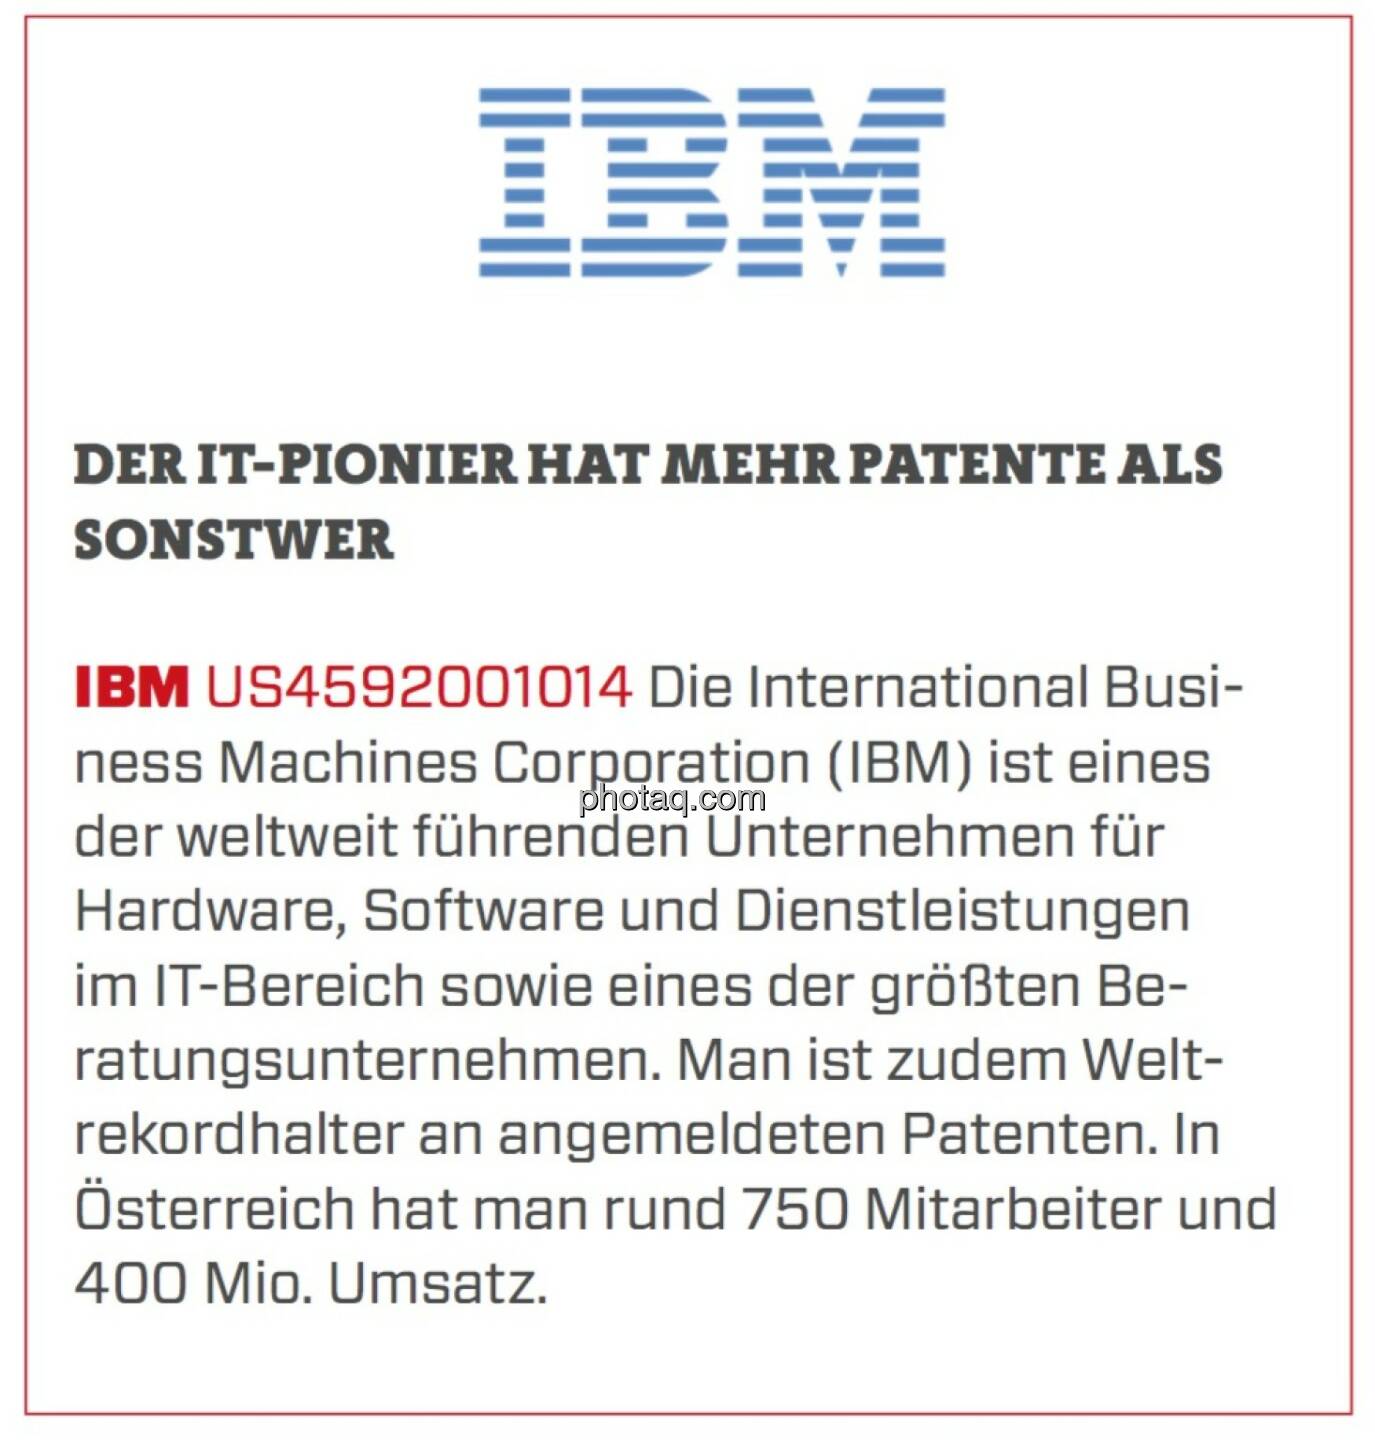 IBM - Der IT-Pionier hat mehr Patente als sonstwer: Die International Business Machines Corporation (IBM) ist eines der weltweit führenden Unternehmen für Hardware, Software und Dienstleistungen im IT-Bereich sowie eines der größten Beratungsunternehmen. Man ist zudem Weltrekordhalter an angemeldeten Patenten. In Österreich hat man rund 750 Mitarbeiter und 400 Mio. Umsatz.